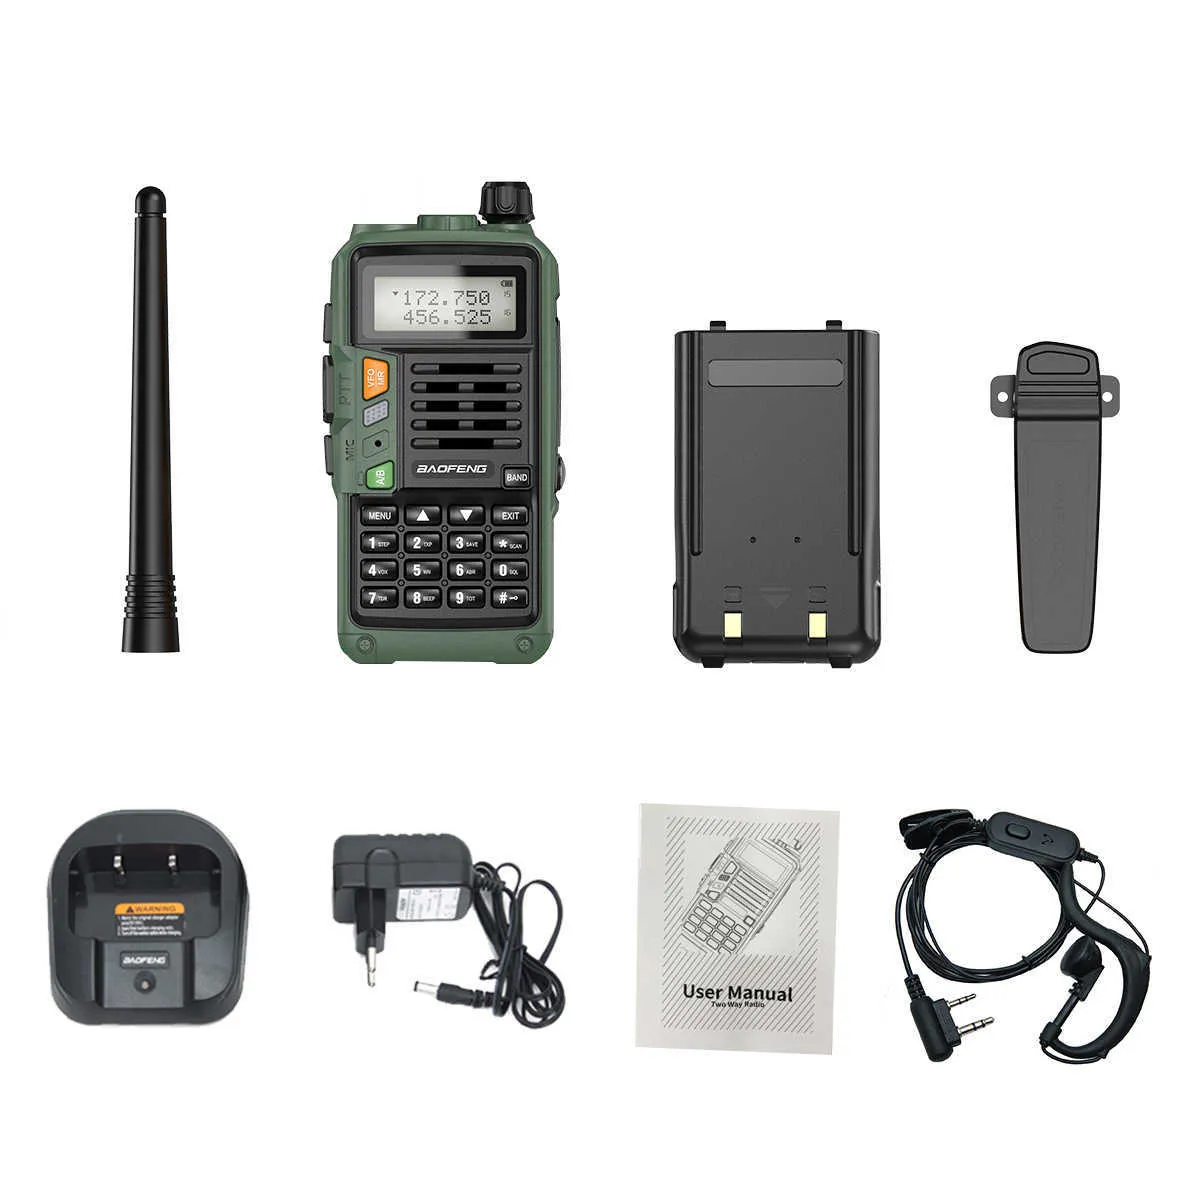 BAOFENG UV-S9 Plus puissant émetteur-récepteur portable avec UHF VHF double bande longue portée talkie-walkie jambon UV-5R Radio bidirectionnelle